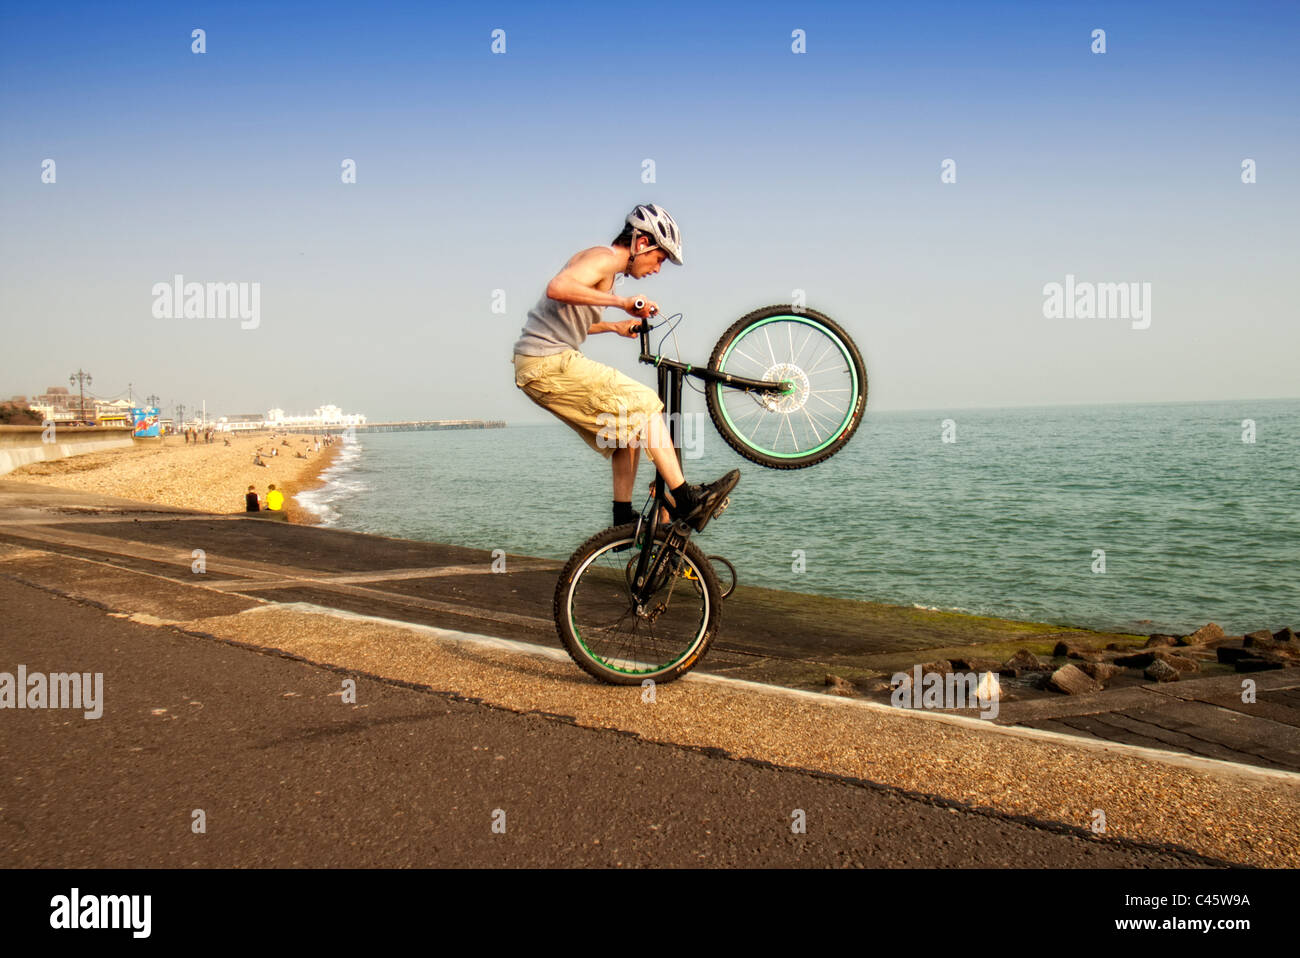 Jeune homme faisant wheelie astuces sur son vélo BMX stunts Banque D'Images